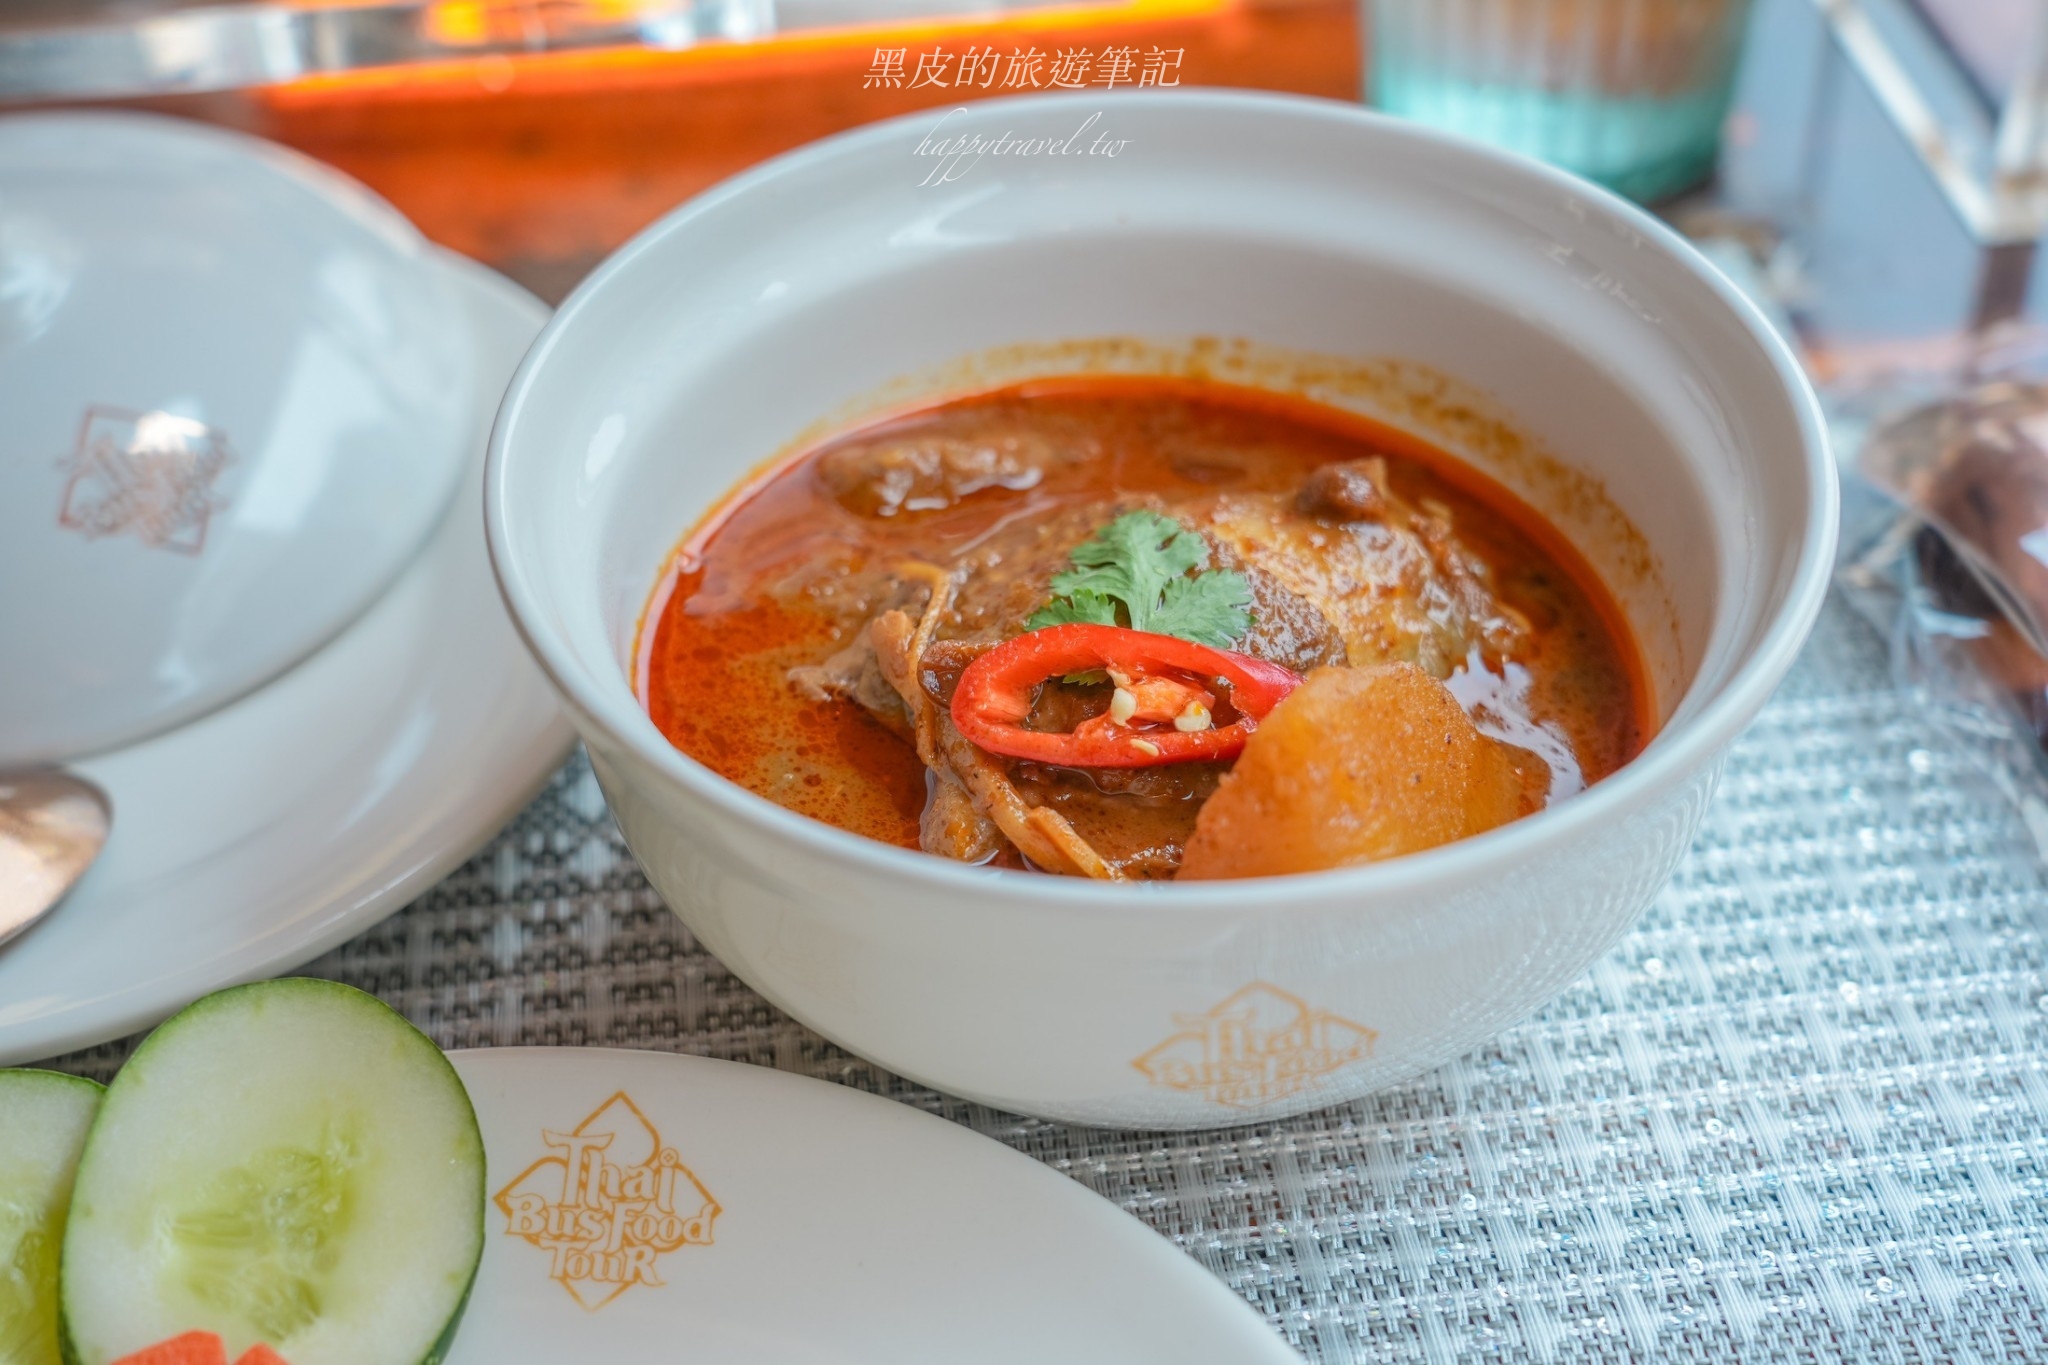 泰國曼谷體驗。Thai Bus Food Tour美食觀光雙層巴士｜泰國全新觀光體驗，再享受米其林的餐點中還可以慢遊曼谷古城20個景點